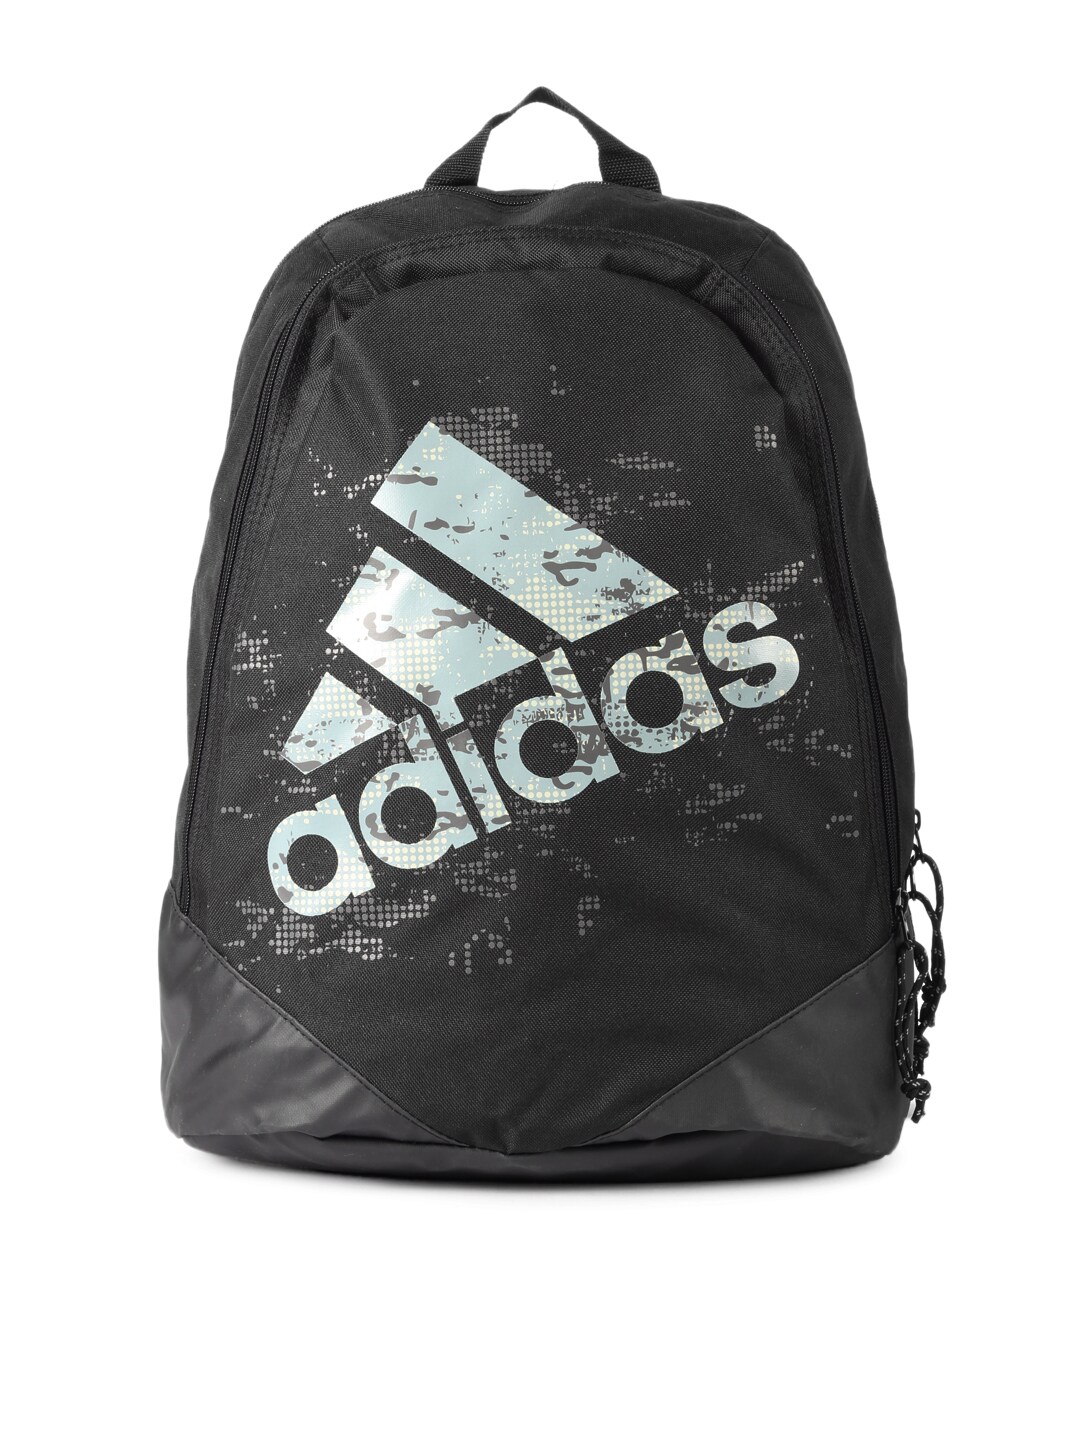 ADIDAS Unisex Black Backpack